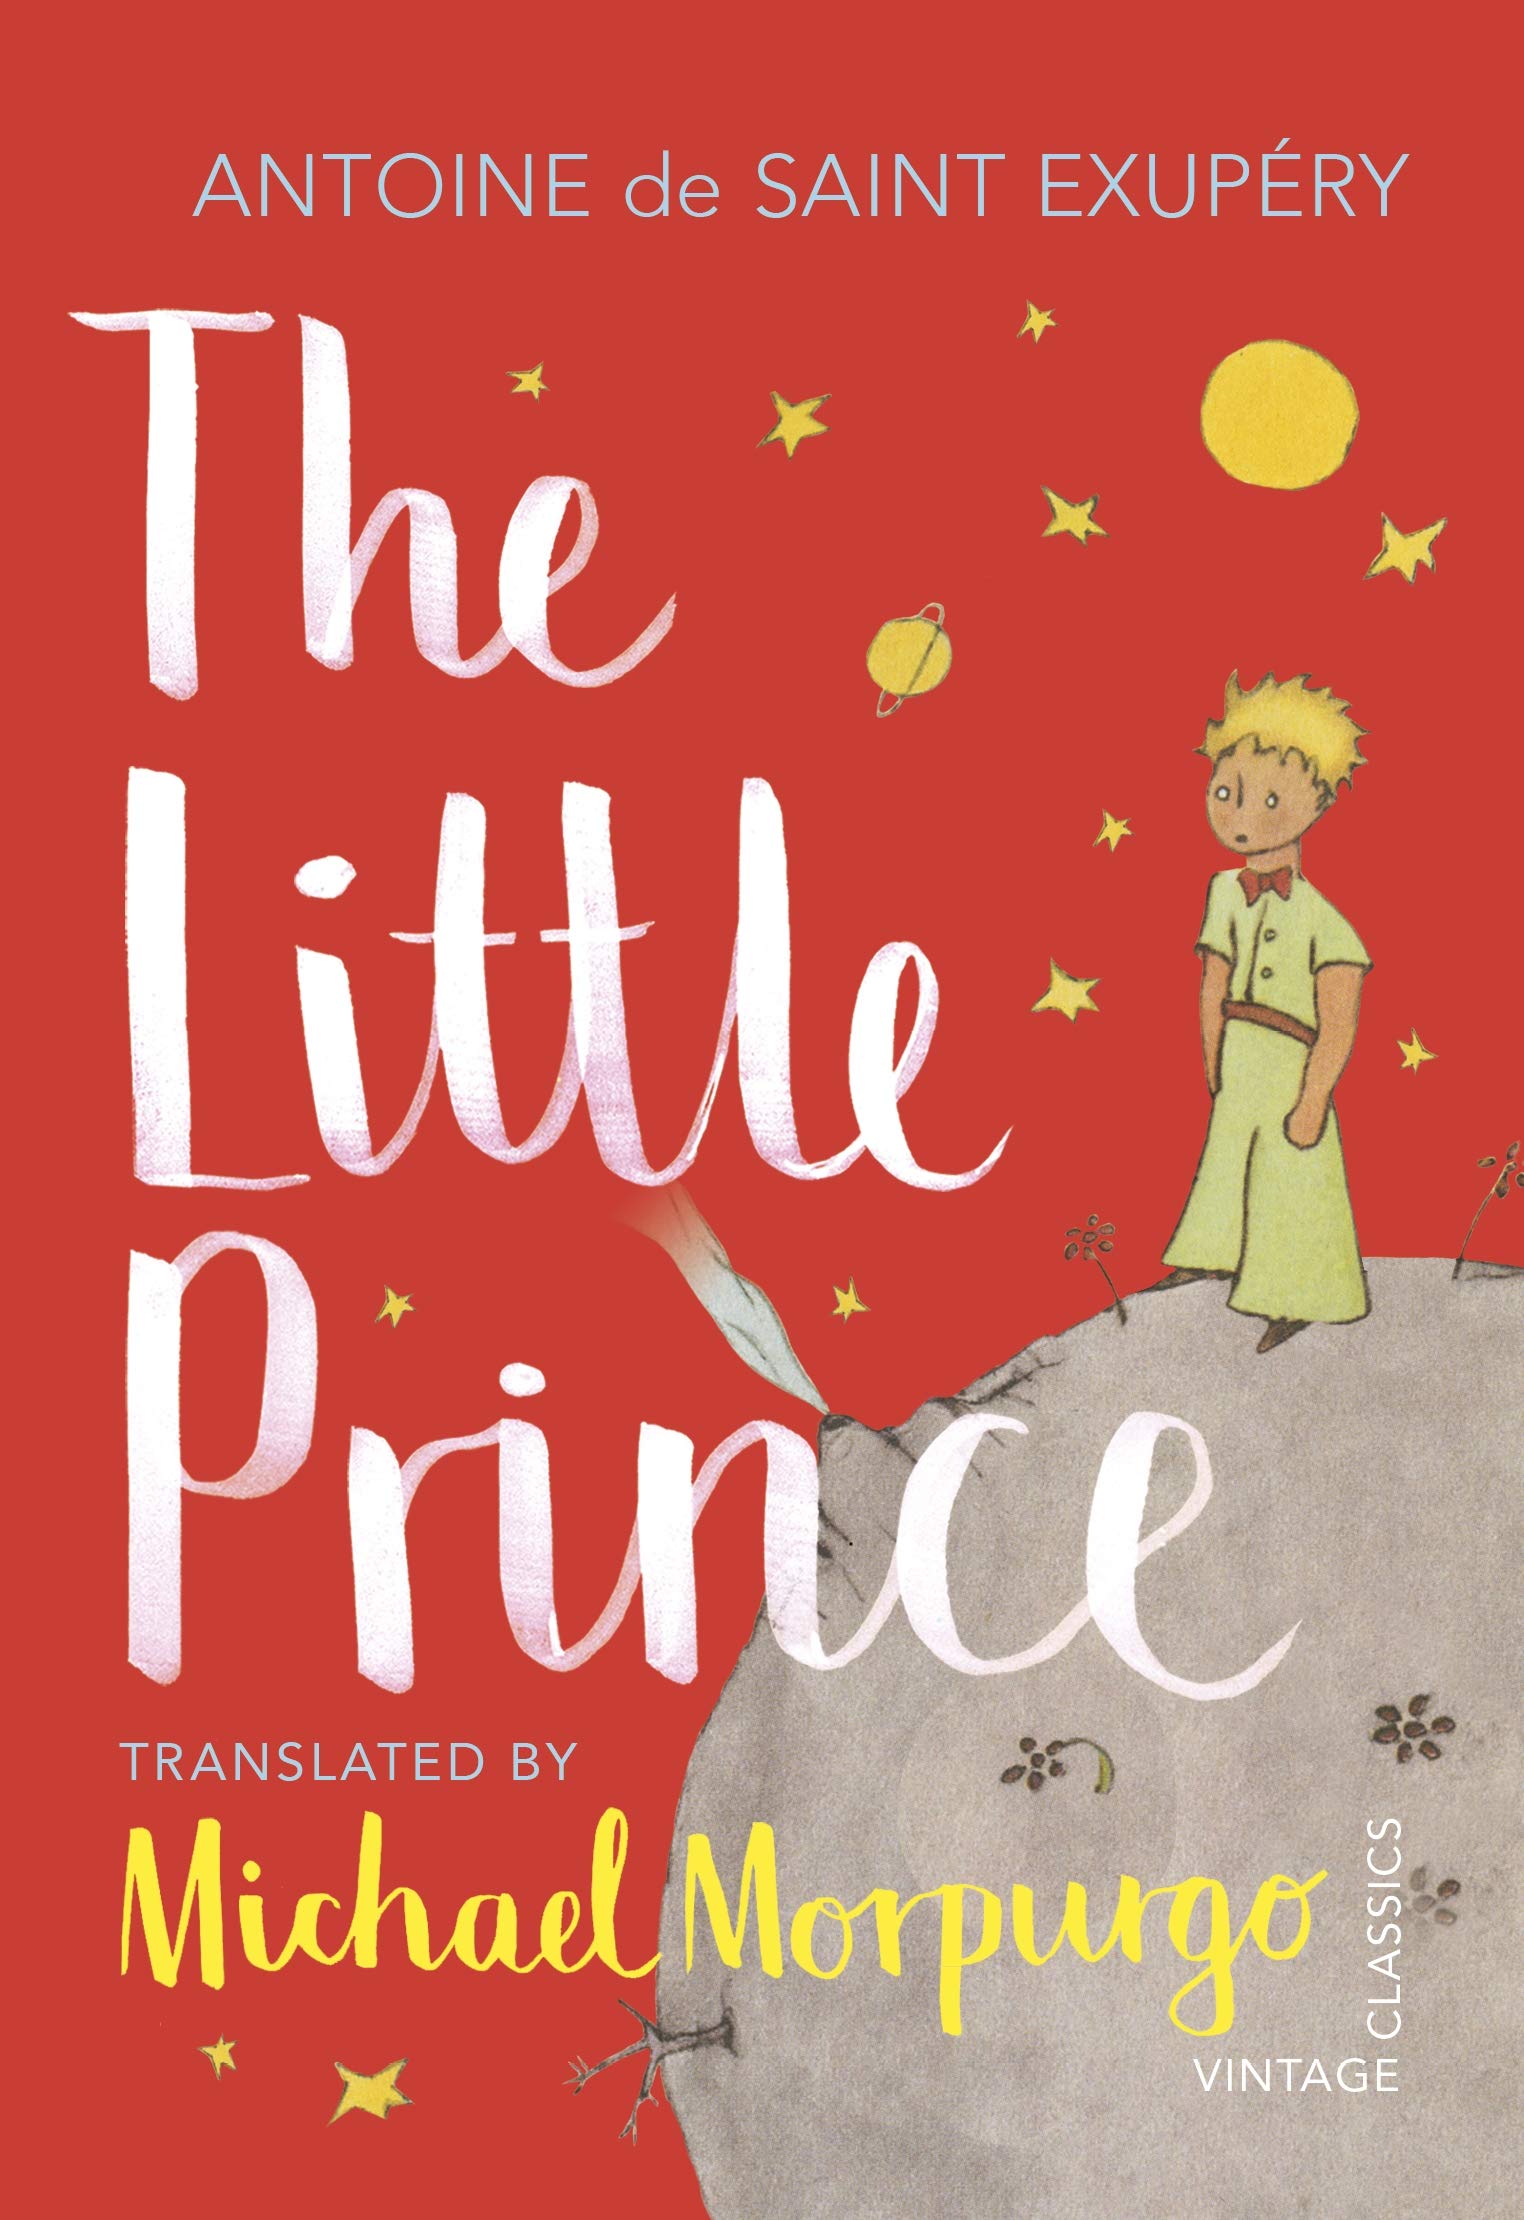 Little Prince | Antoine De Saint-Exupery image0